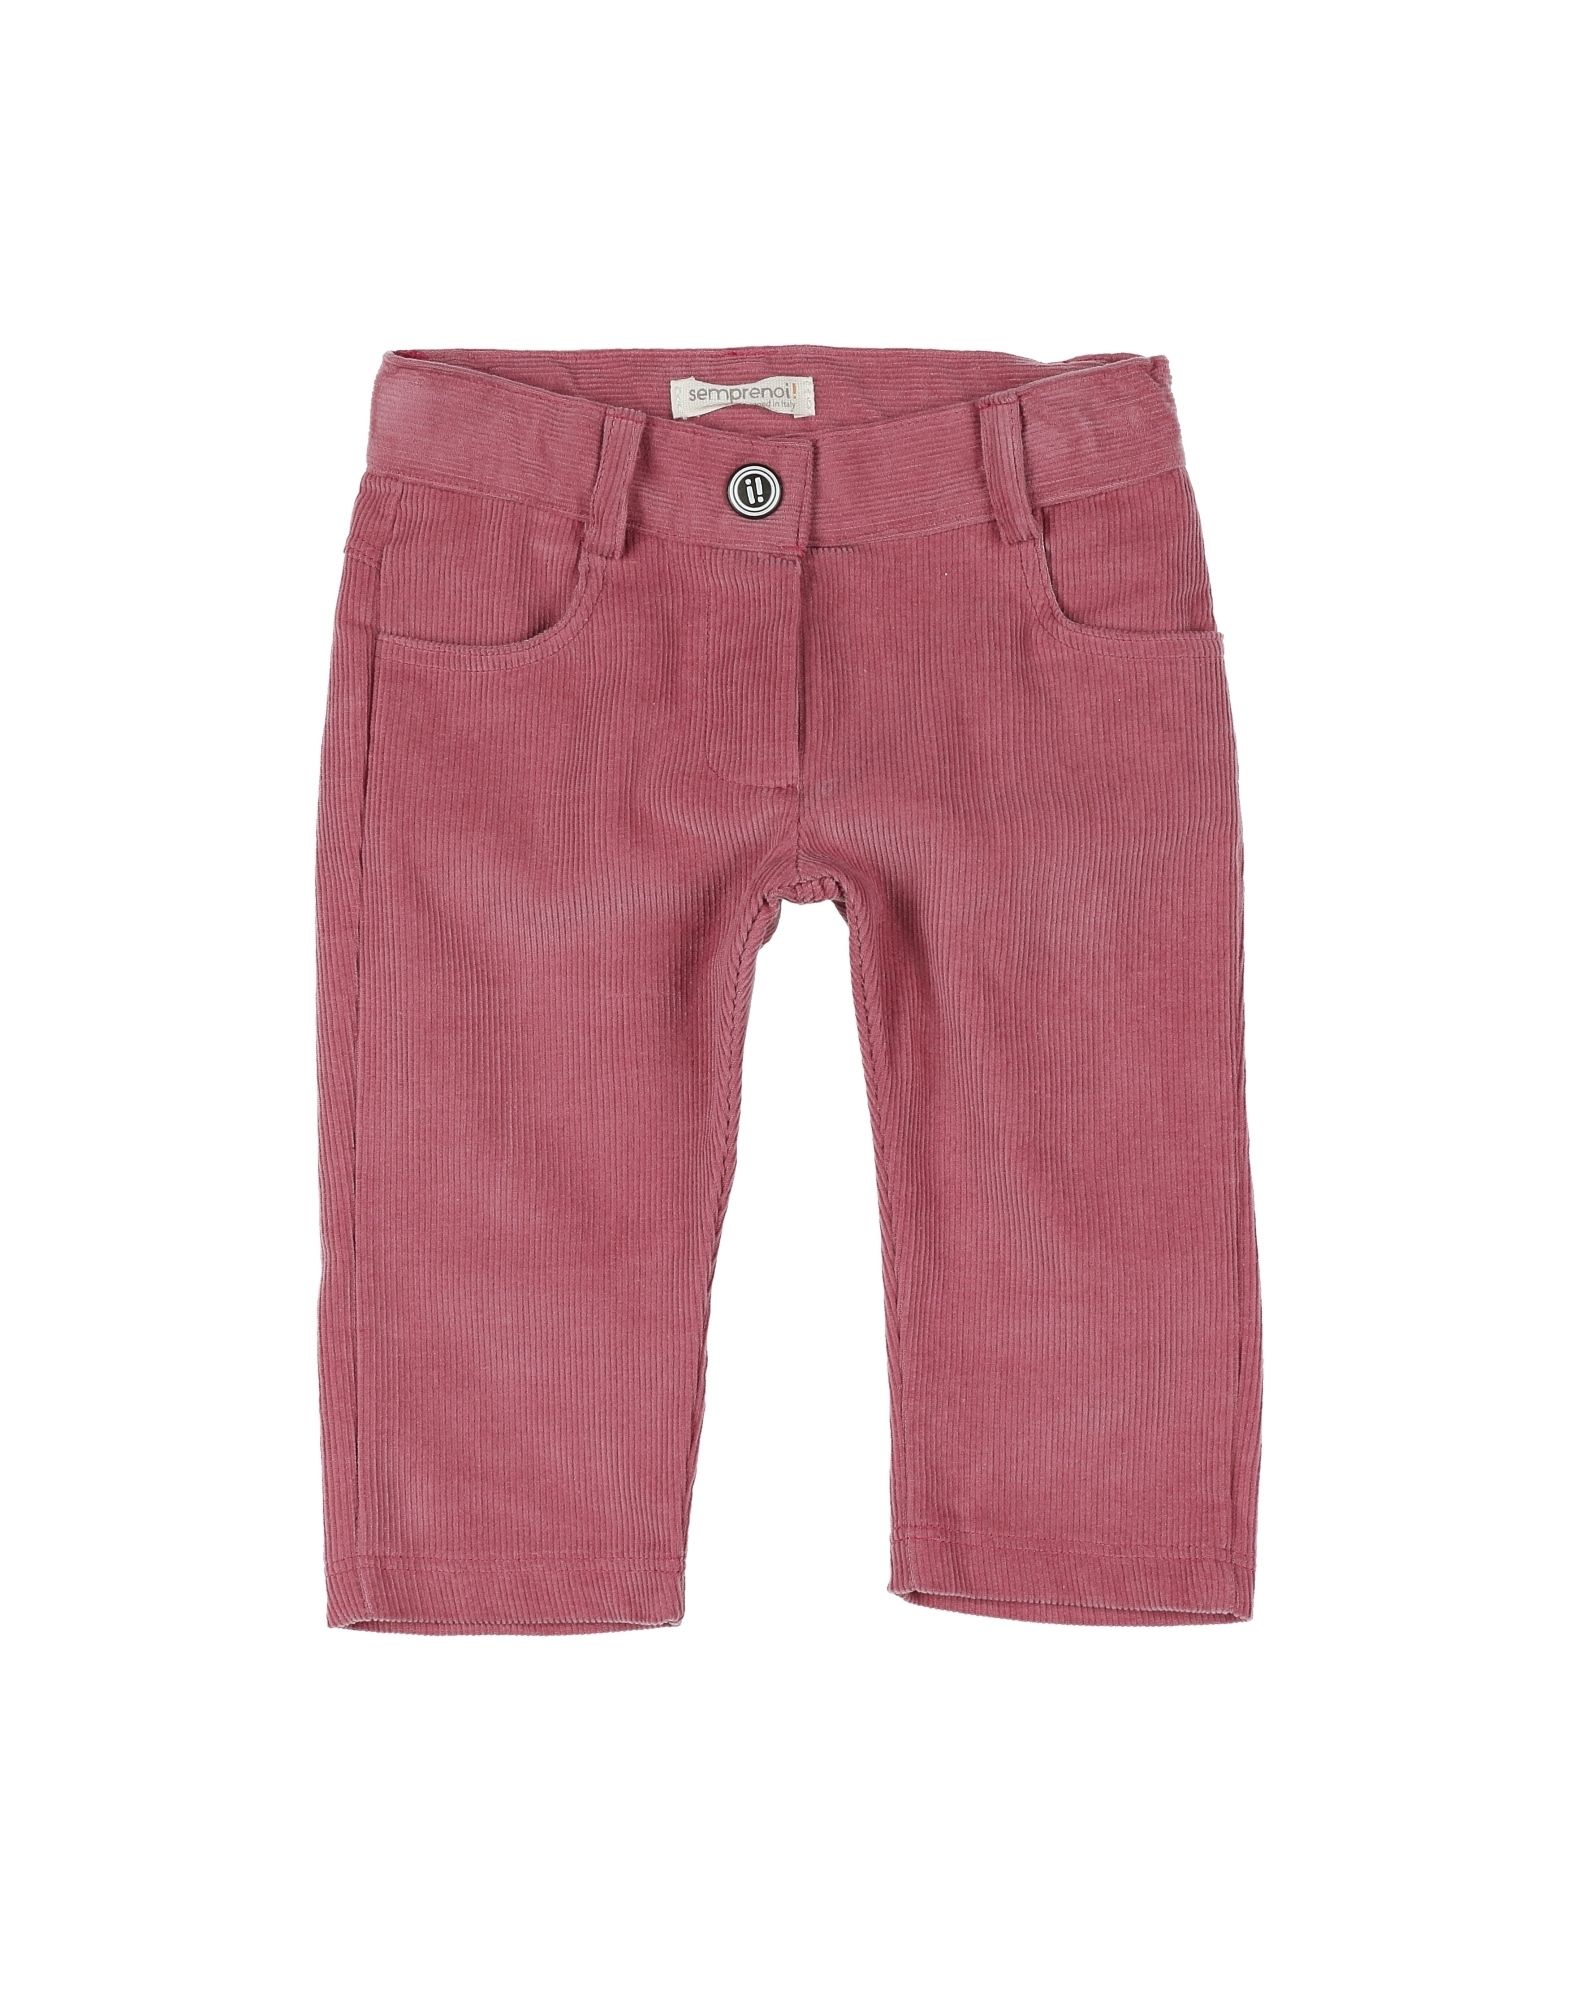 Повседневные брюки  - Розовый цвет